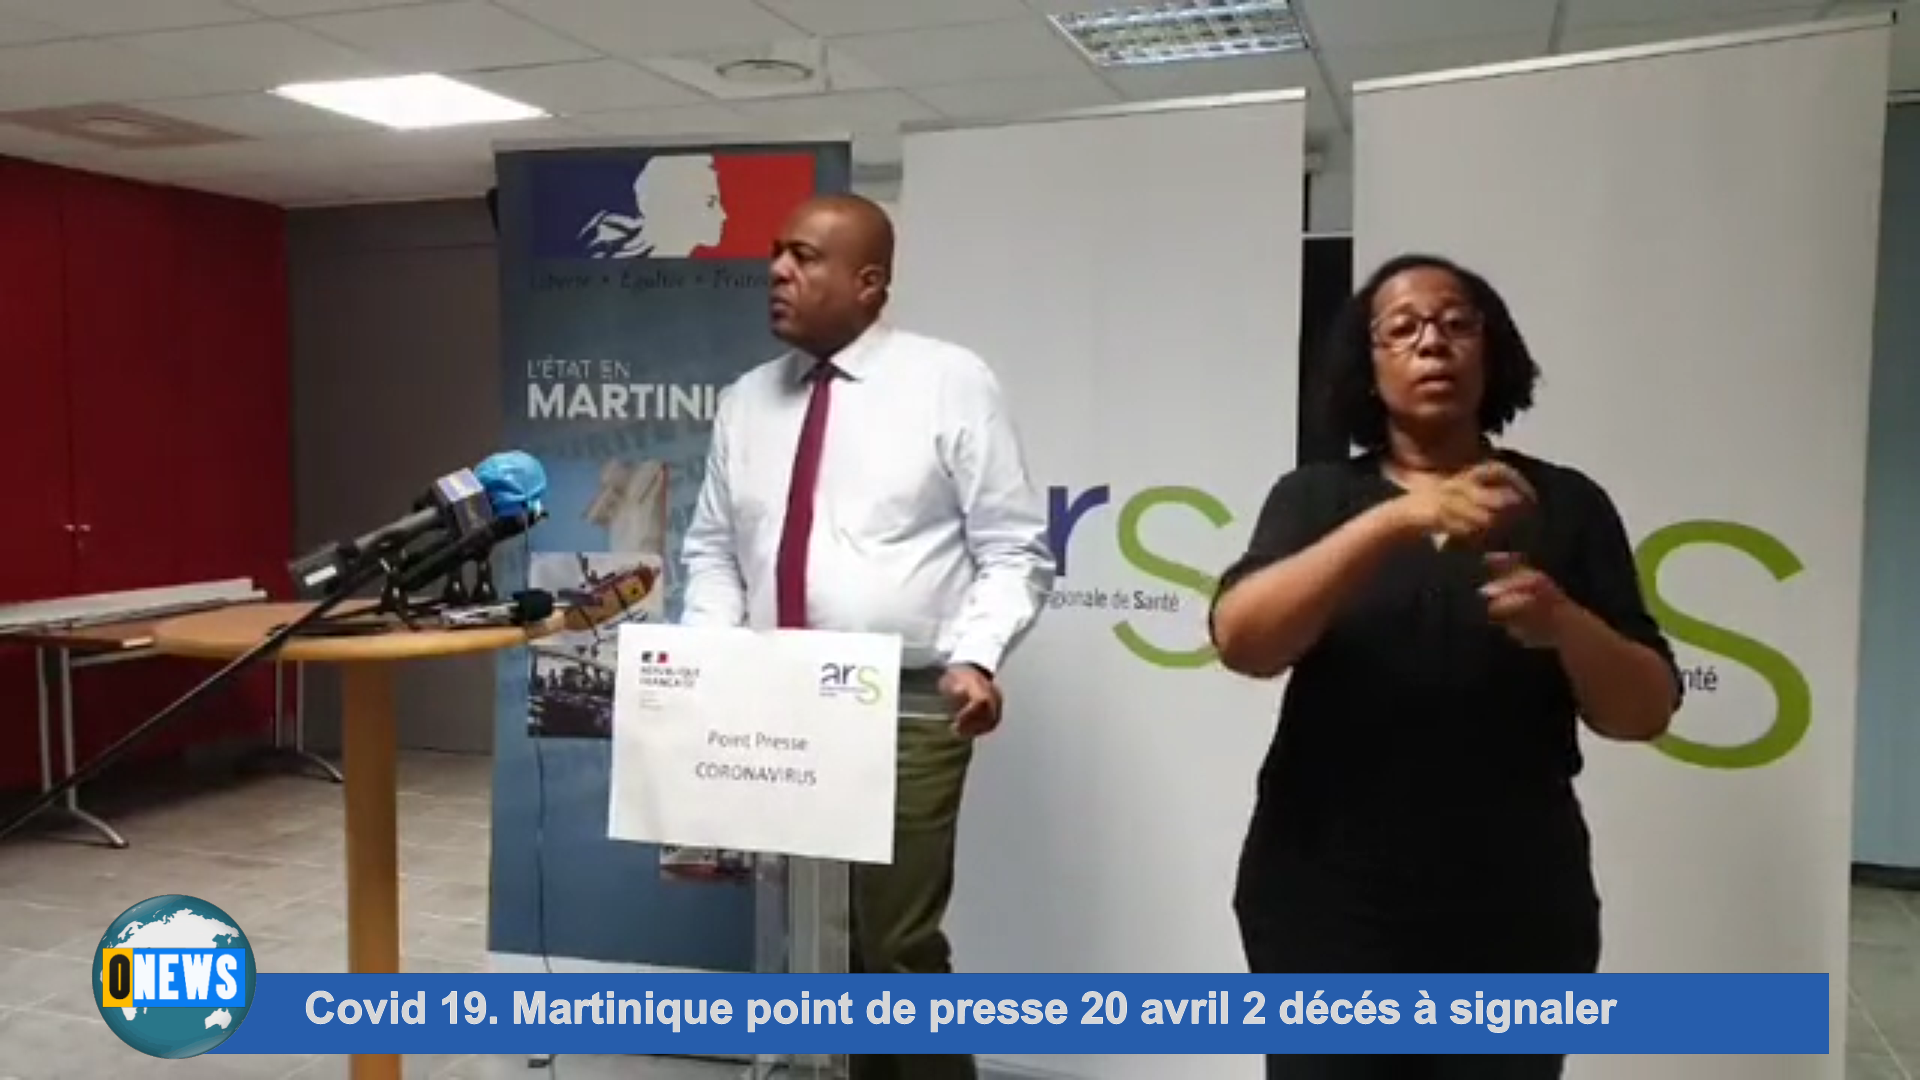 [Vidéo] Covid 19 Martinique point de presse 20 avril 2 décés à signaler dimanche dernier.